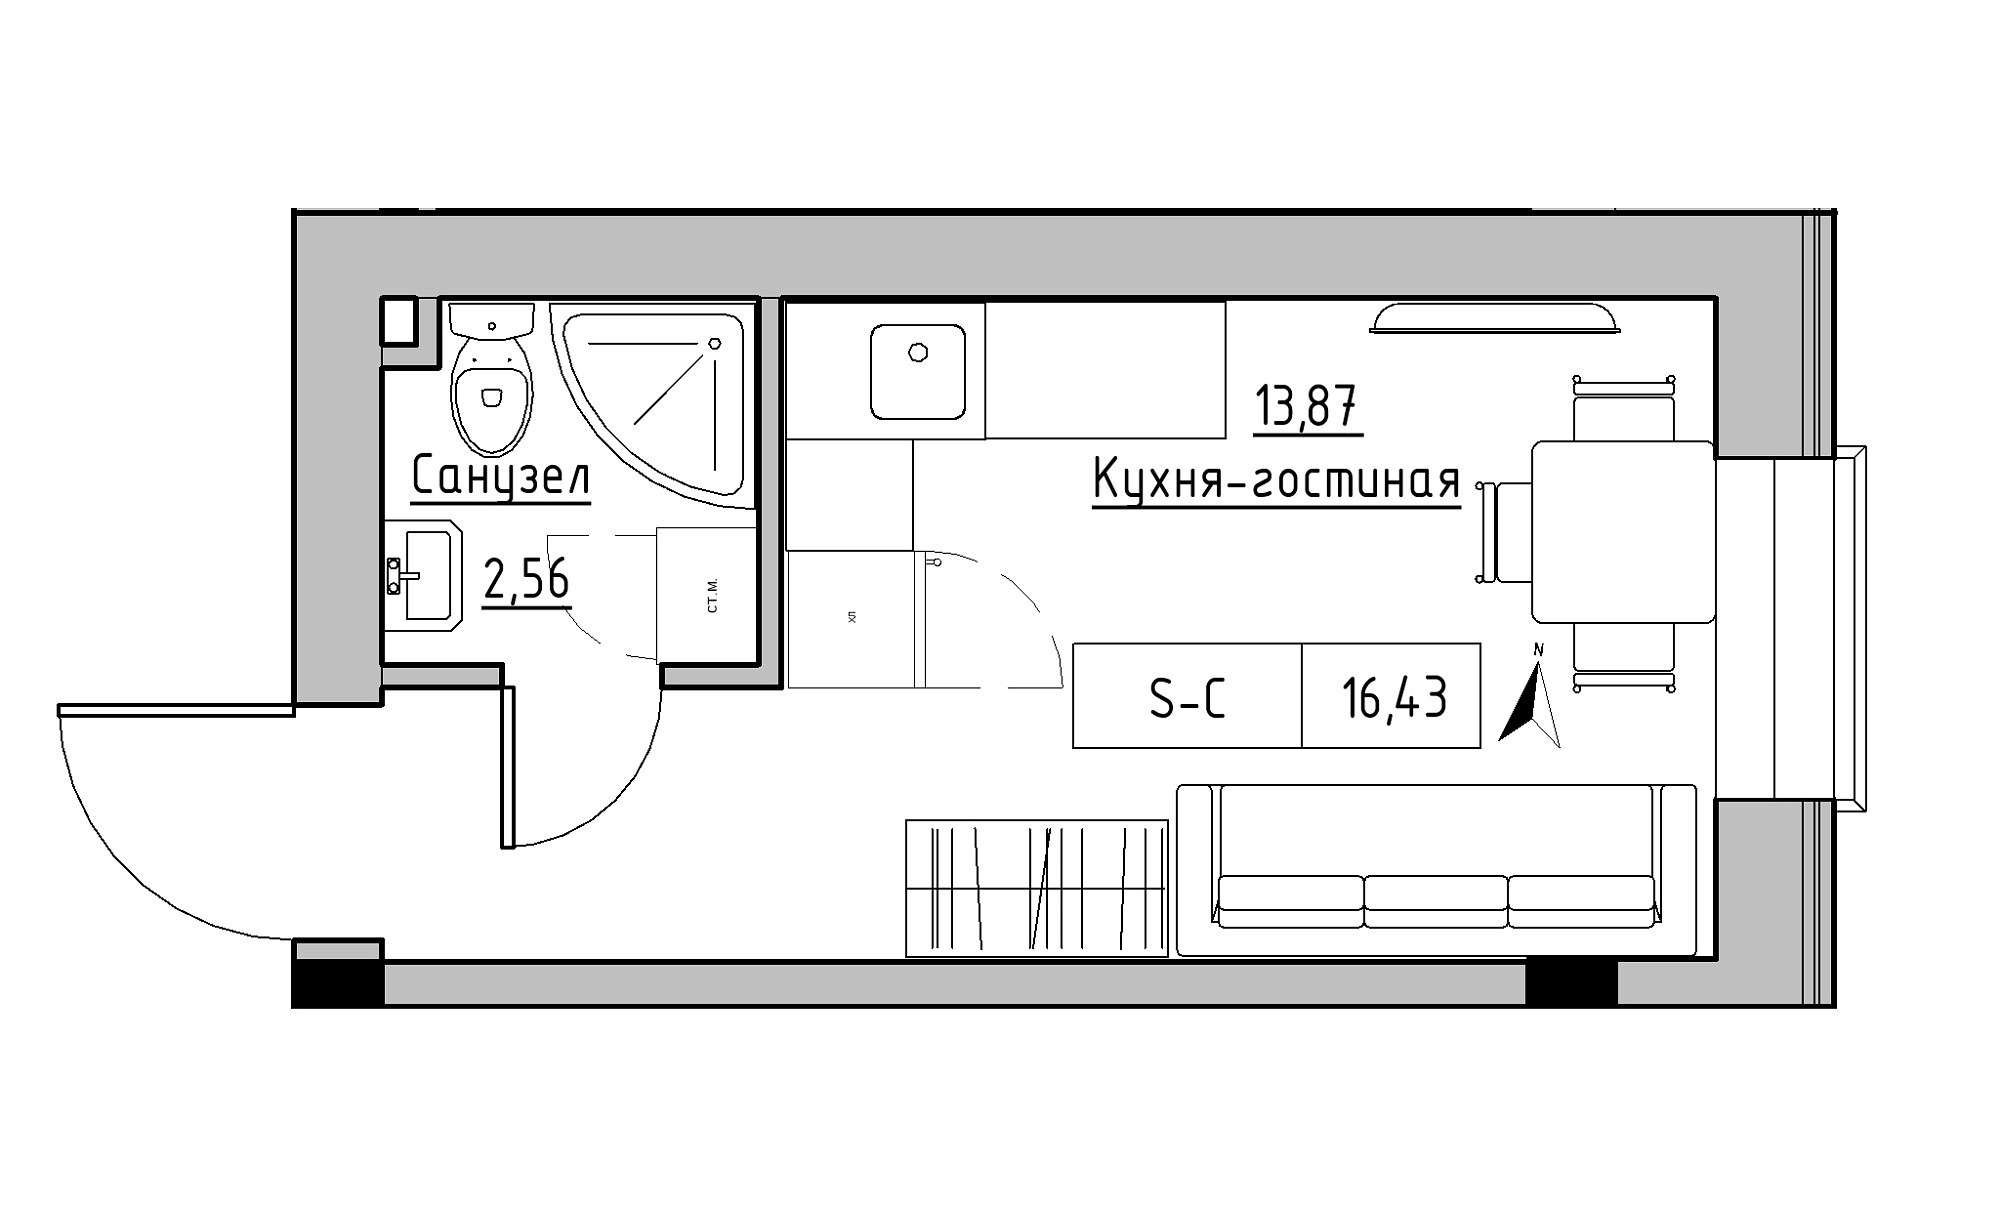 Планування Smart-квартира площею 16.43м2, KS-023-05/0005.